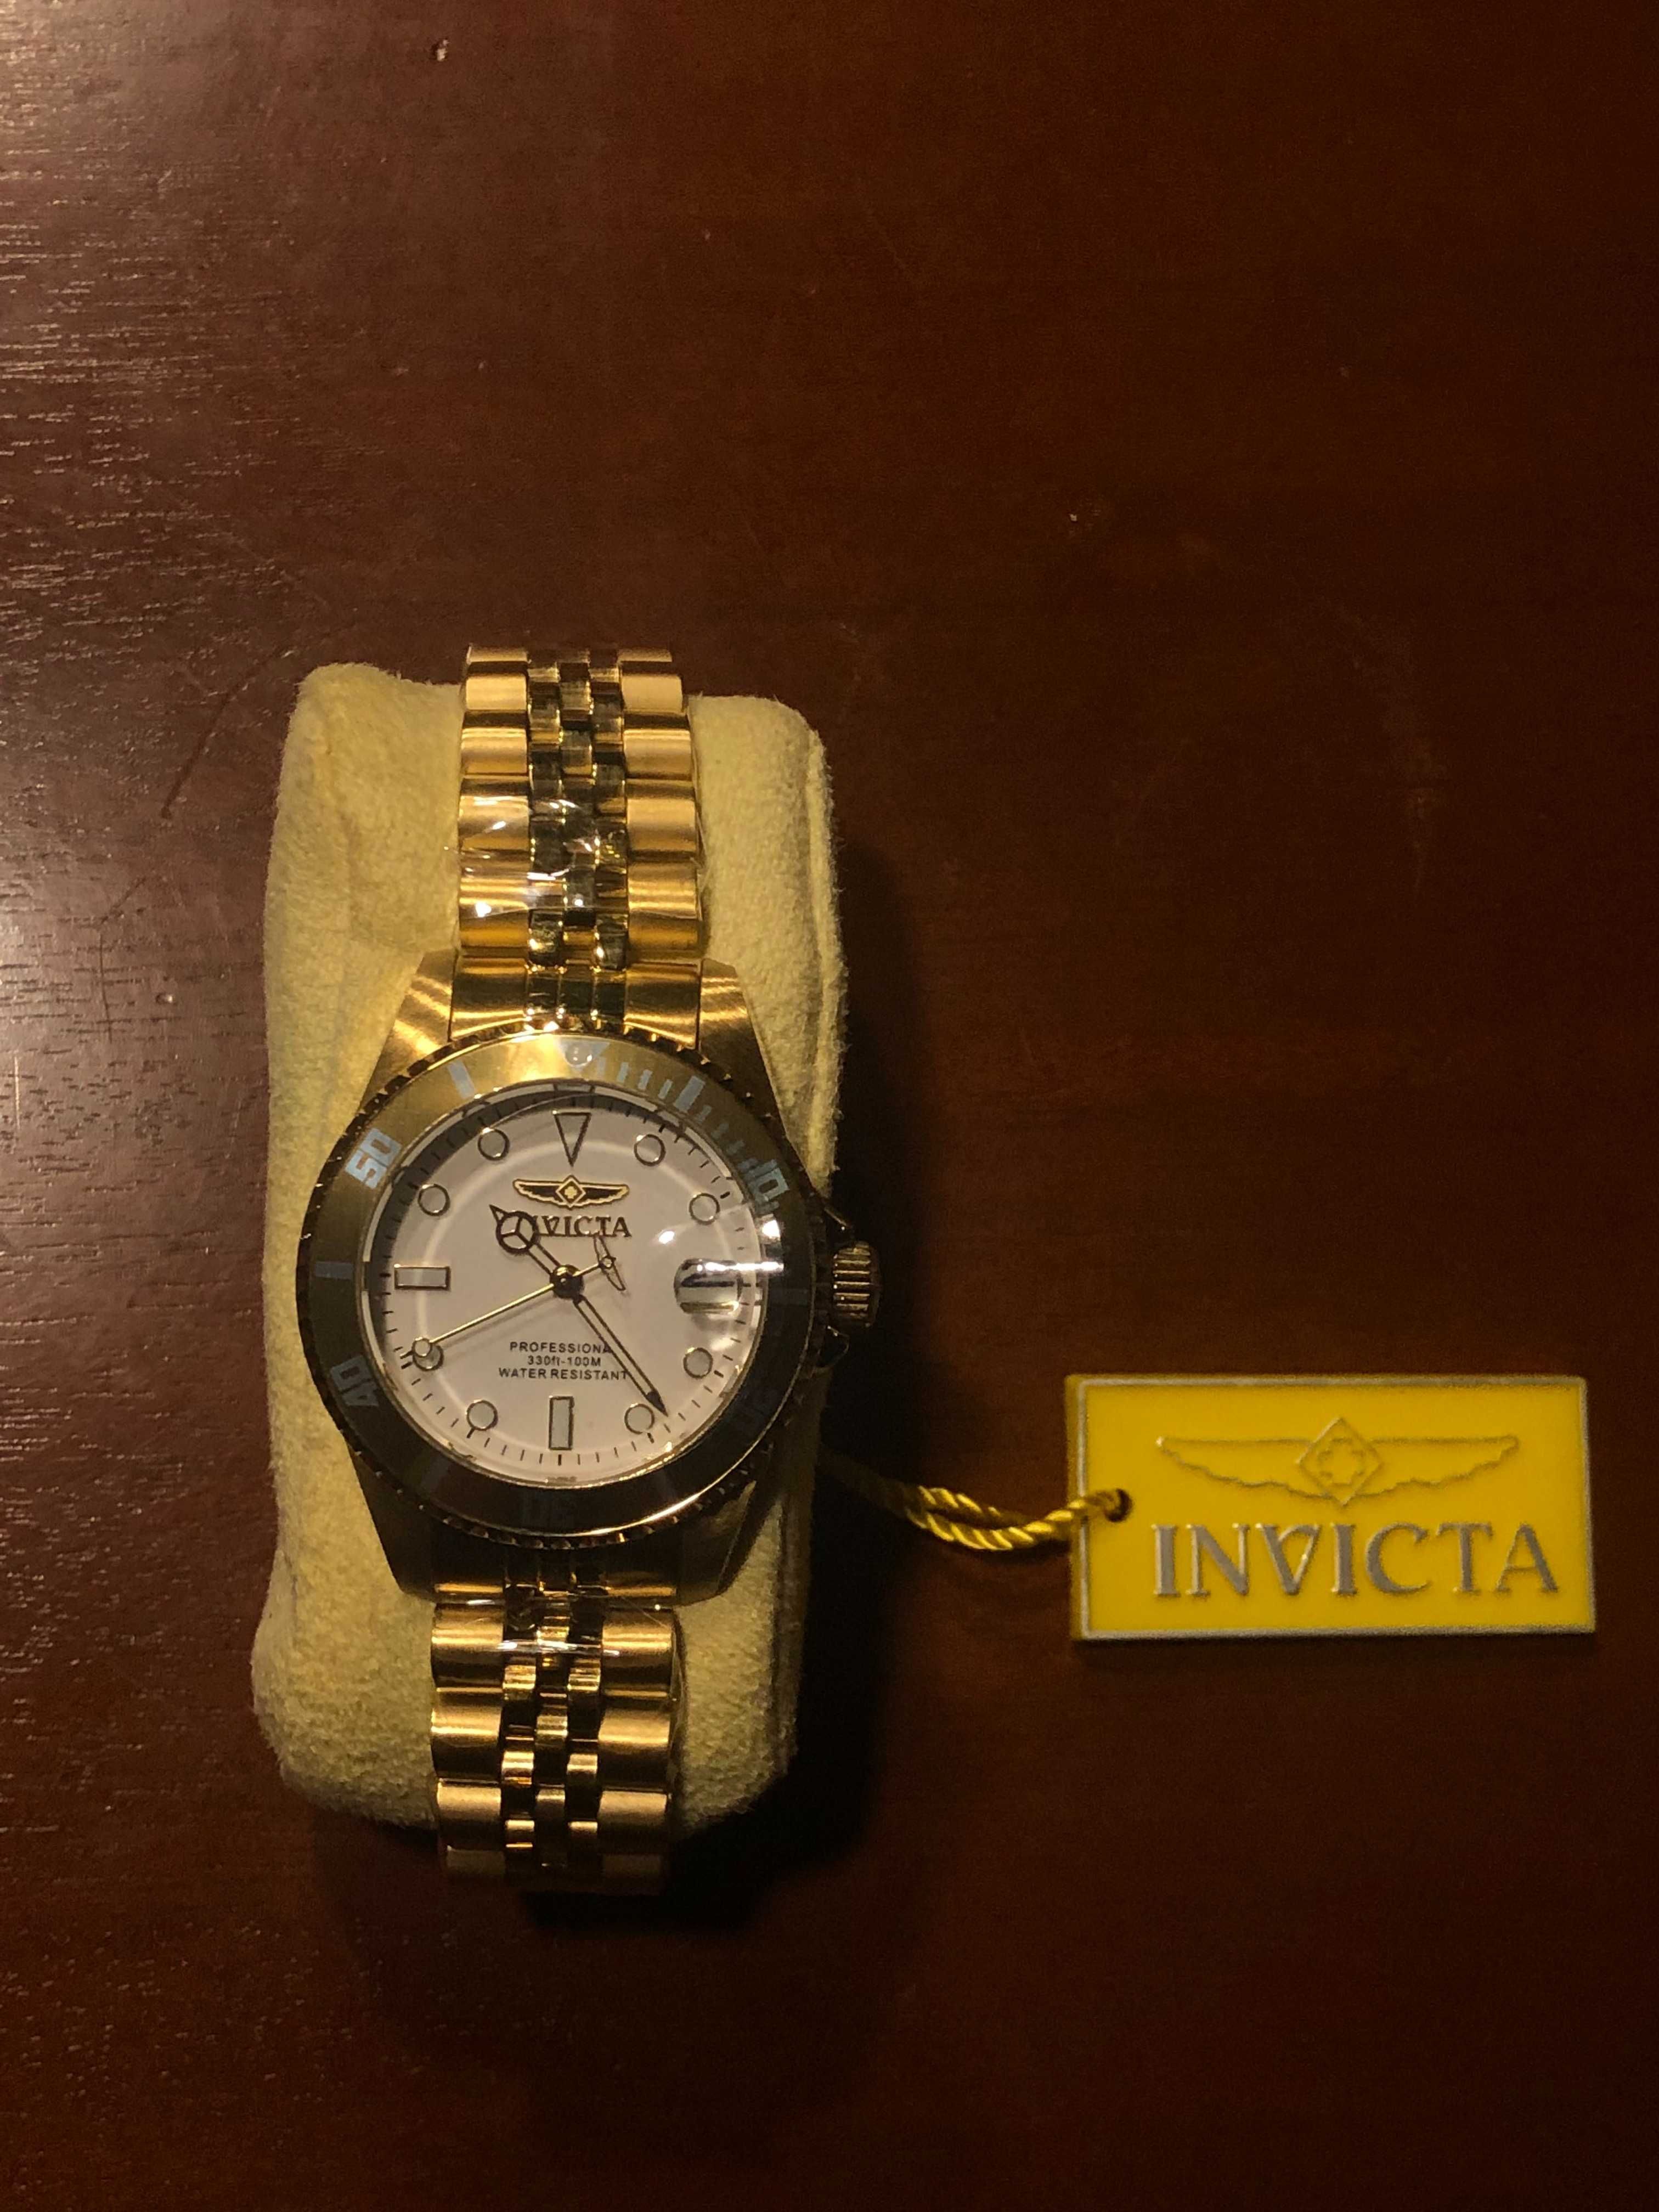 Nowy zegarek Invicta - złoty z białą tarczą i datownikiem